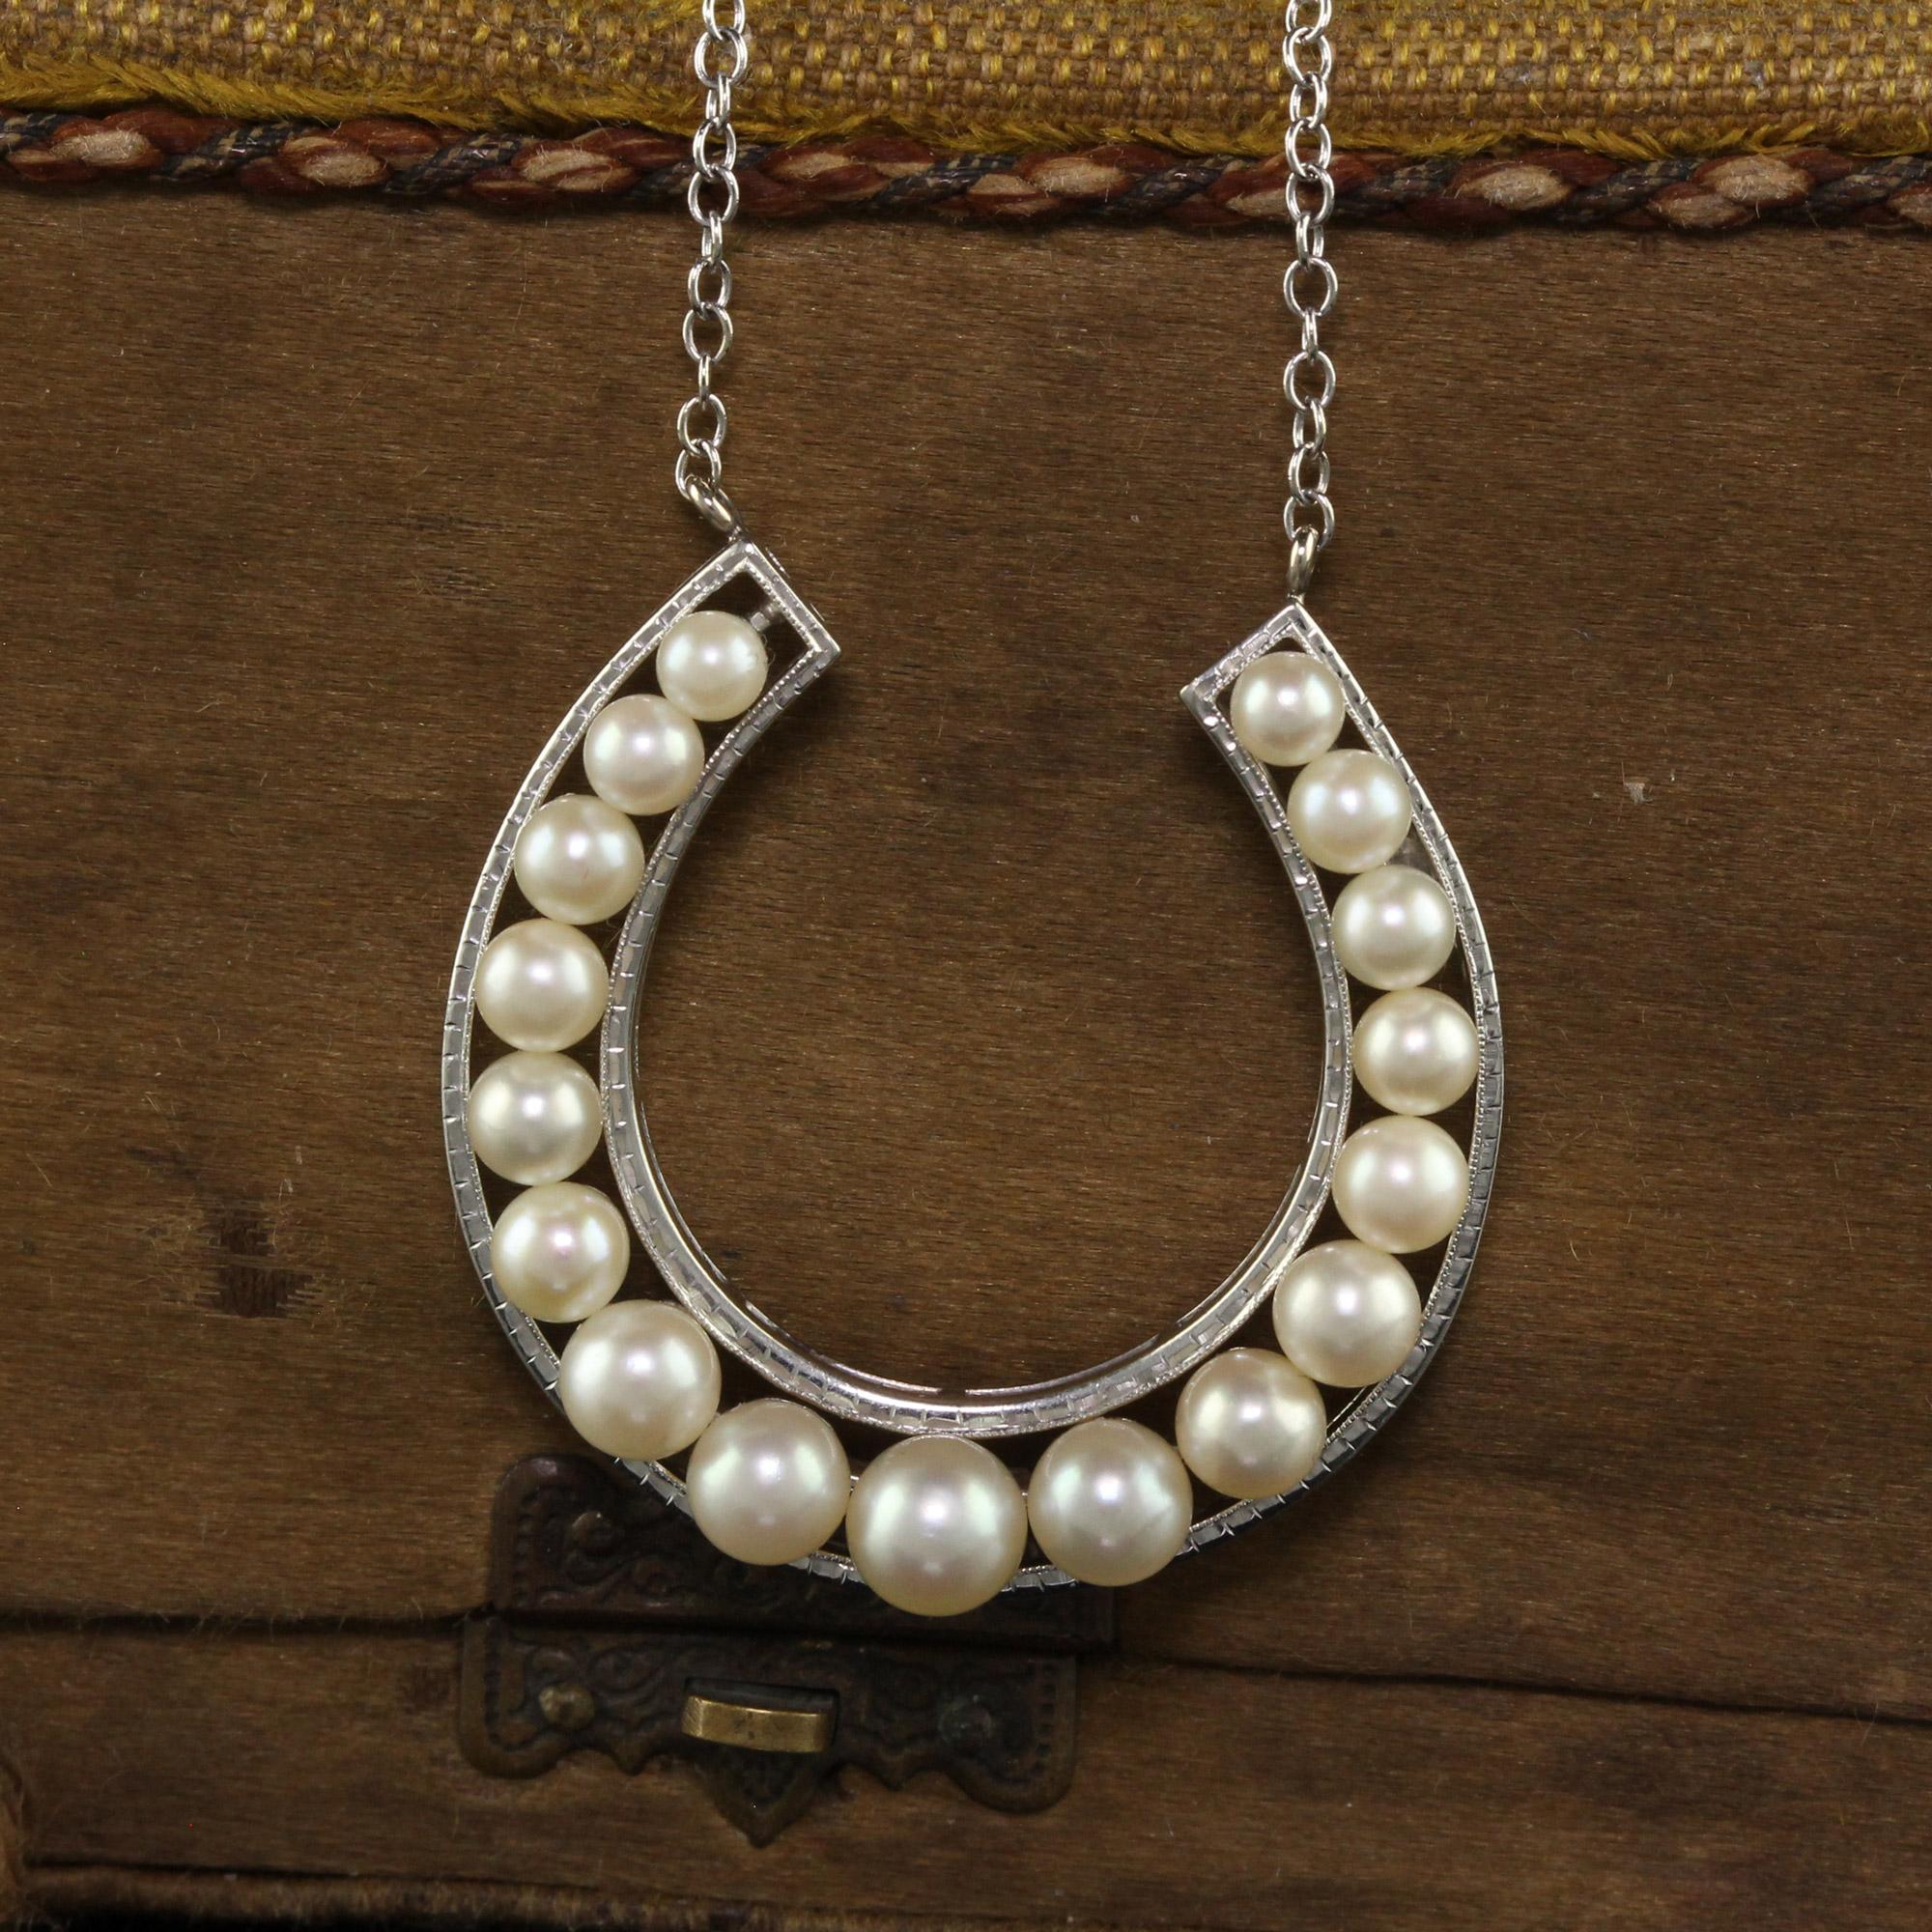 Magnifique collier Vintage en or blanc 18K avec pendentif en forme de fer à cheval en perle de Mikimoto Akoya. Ce magnifique pendentif en perles de Mikimoto est réalisé en or blanc 18 carats. La partie supérieure du fer à cheval est ornée d'une